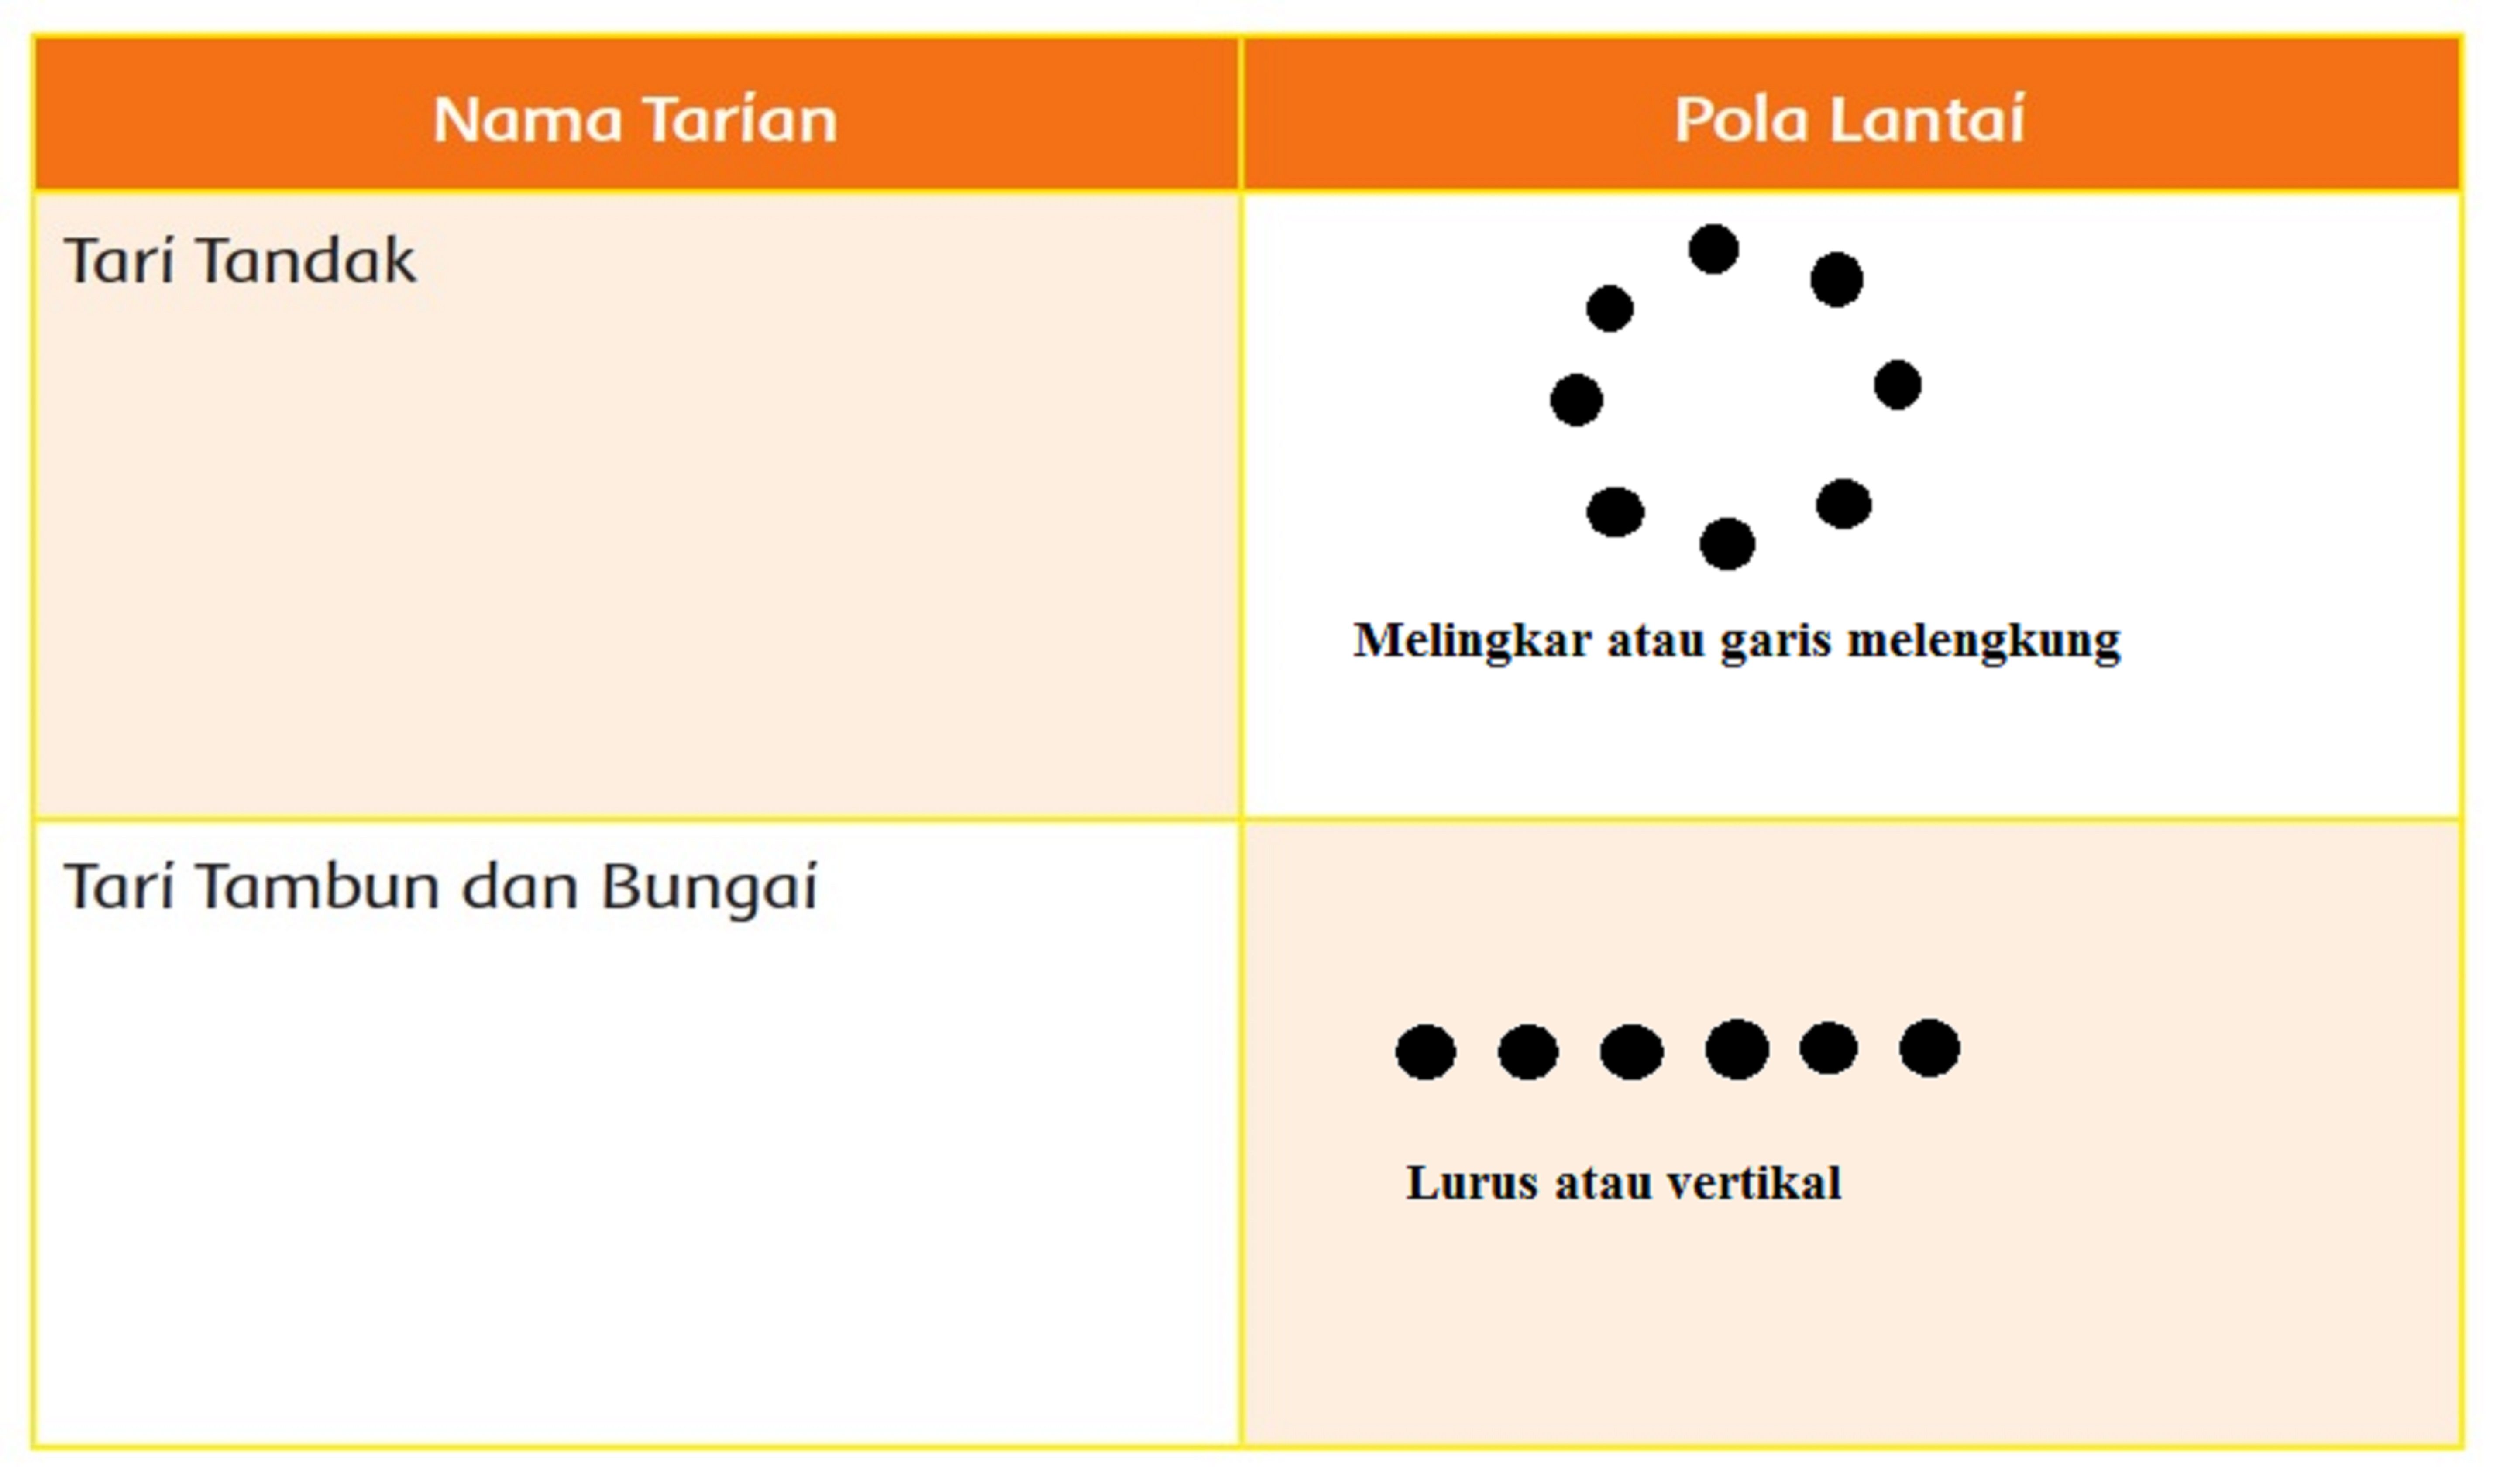 Pola lantai tari Tandak serta tari Tambun dan Bungai, kunci jawaban tema 2 kelas 6 SD MI halaman 35 subtema 3.